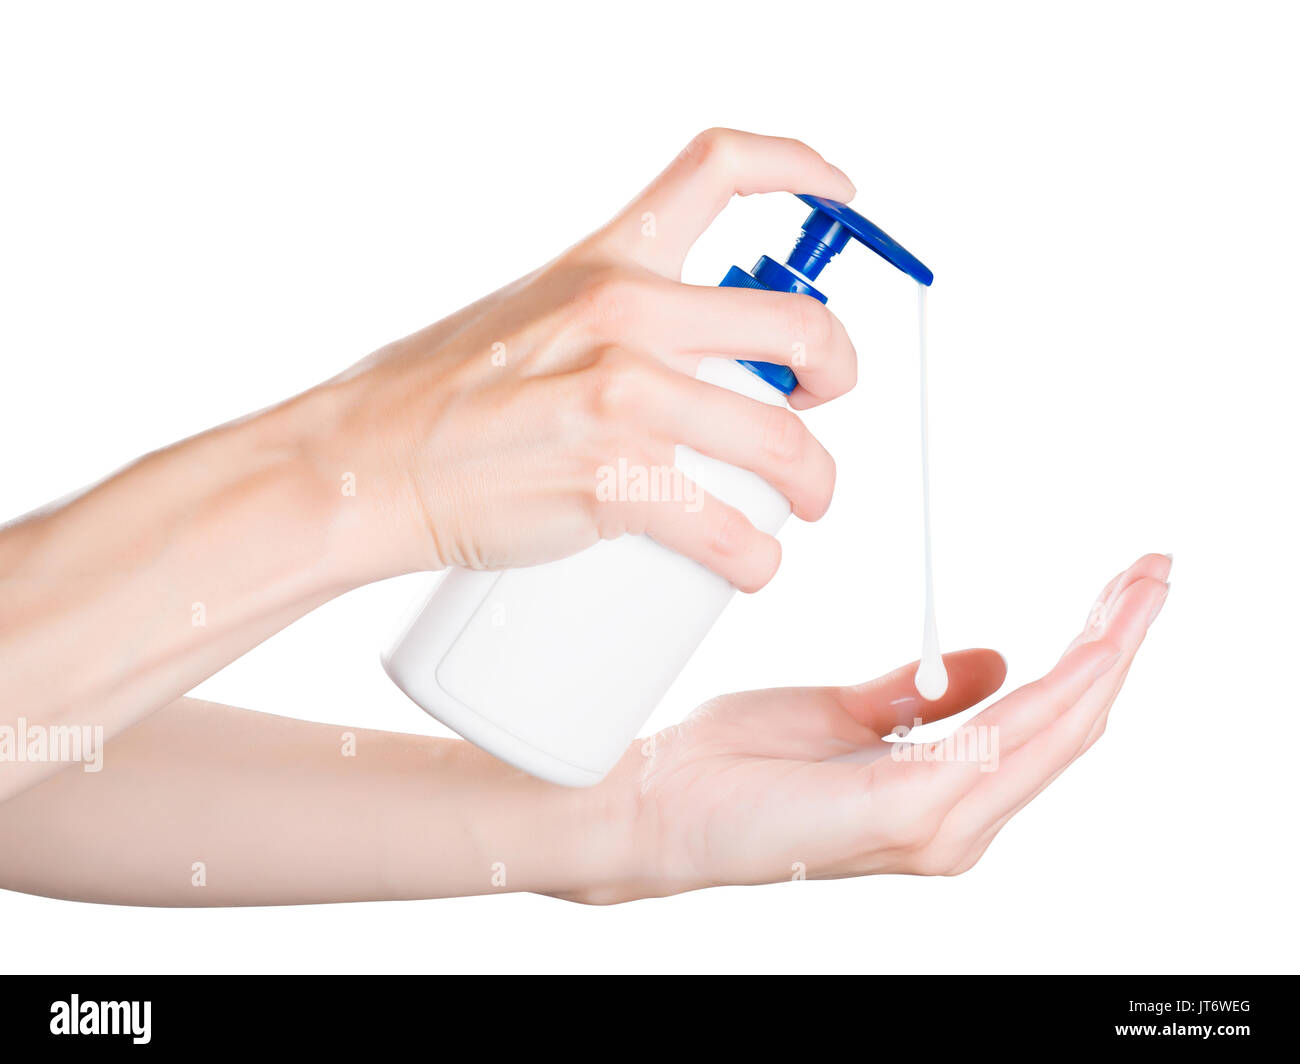 Mujer empujando el dispensador de jabón de manos con jabón drop. Aislado en blanco, trazado de recorte incluido Foto de stock